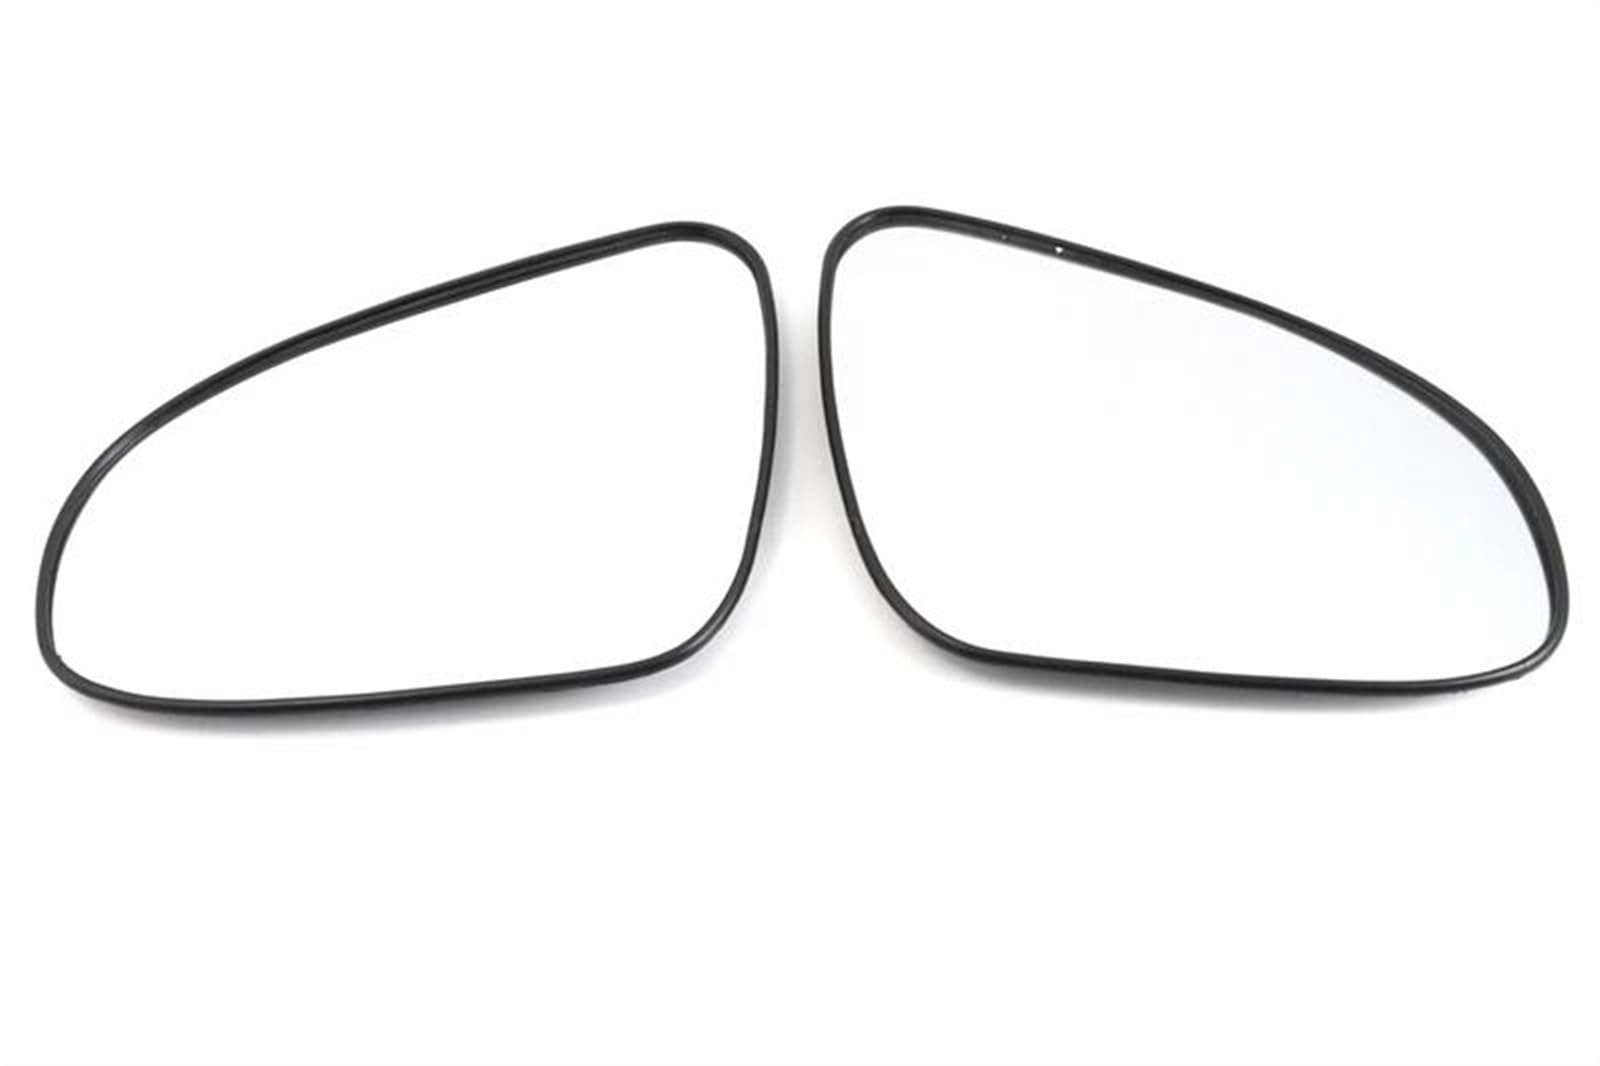 Ultradünne Spiegel Ersatzteile Für Rückspiegelglas Autorückspiegel Beheizter Rückspiegel Für Auris Für Altis 2014-2019(Left) von DTSGCX